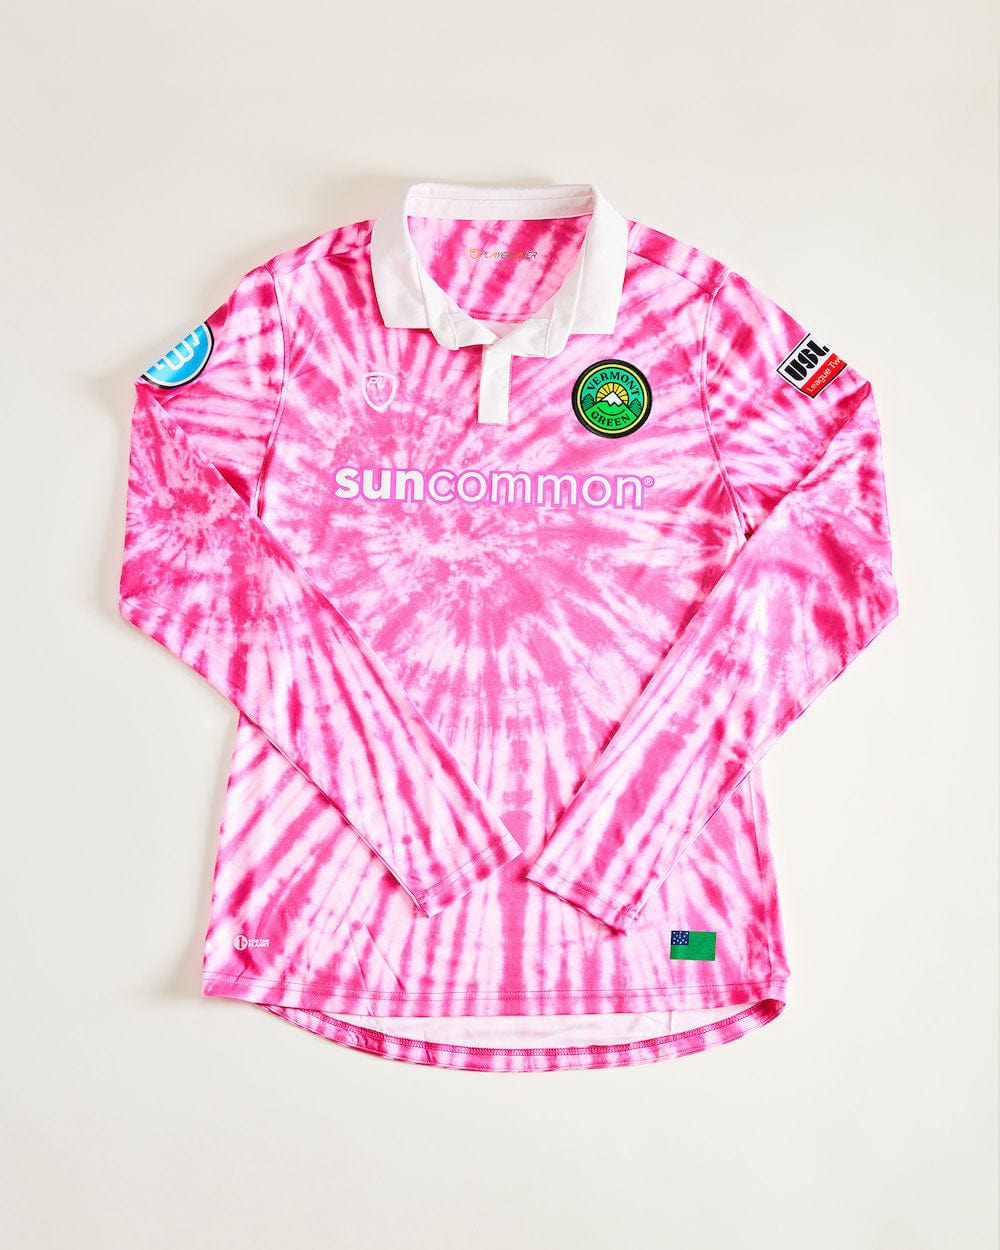 Football Shirt Collective 2022-23 Vermont Green pink swirl goalkeeper football shirt (BNIB)